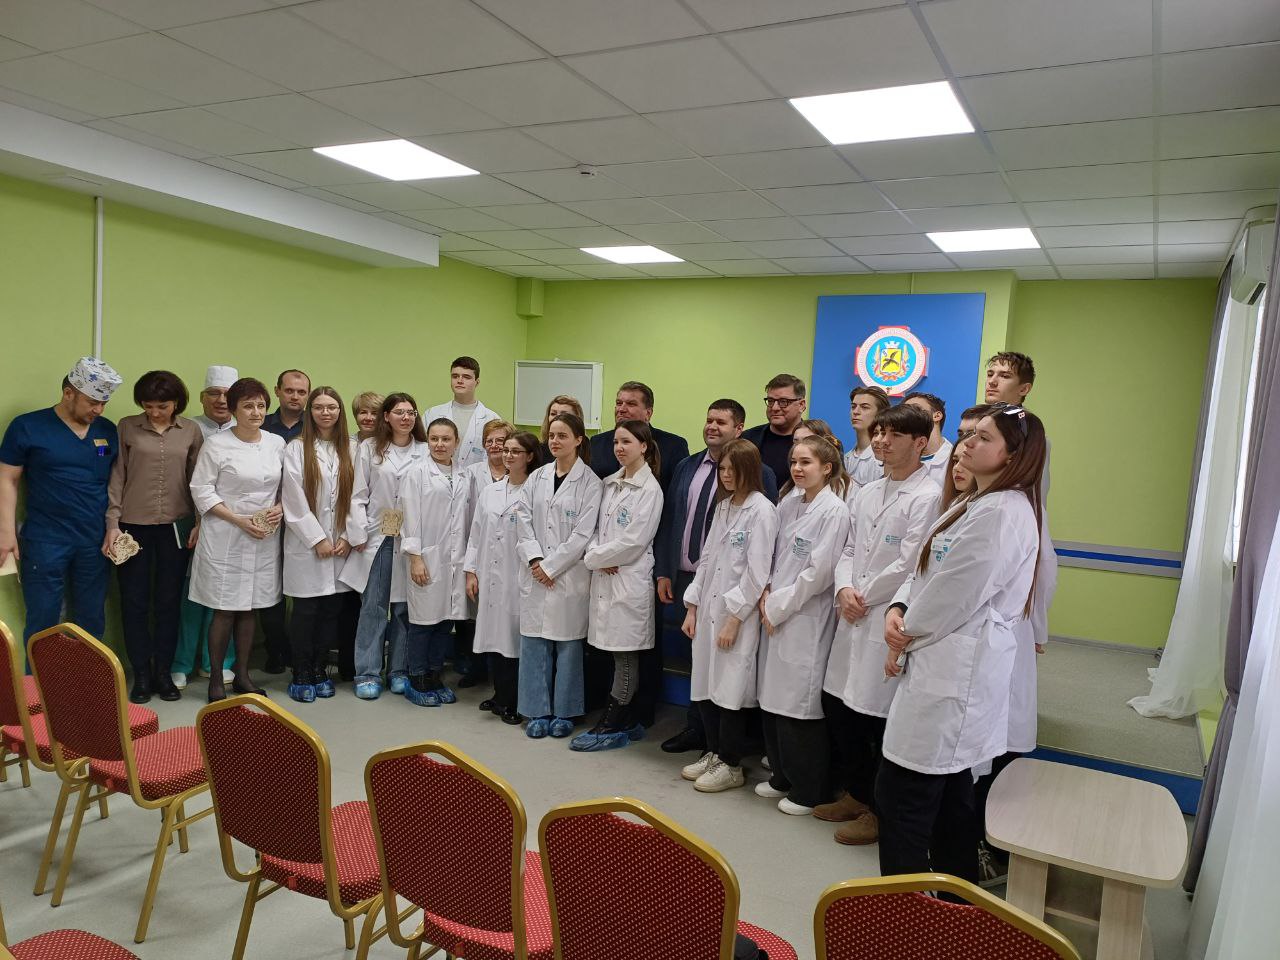 Обучающиеся медицинских классов встречались с представителями медицинского факультета.